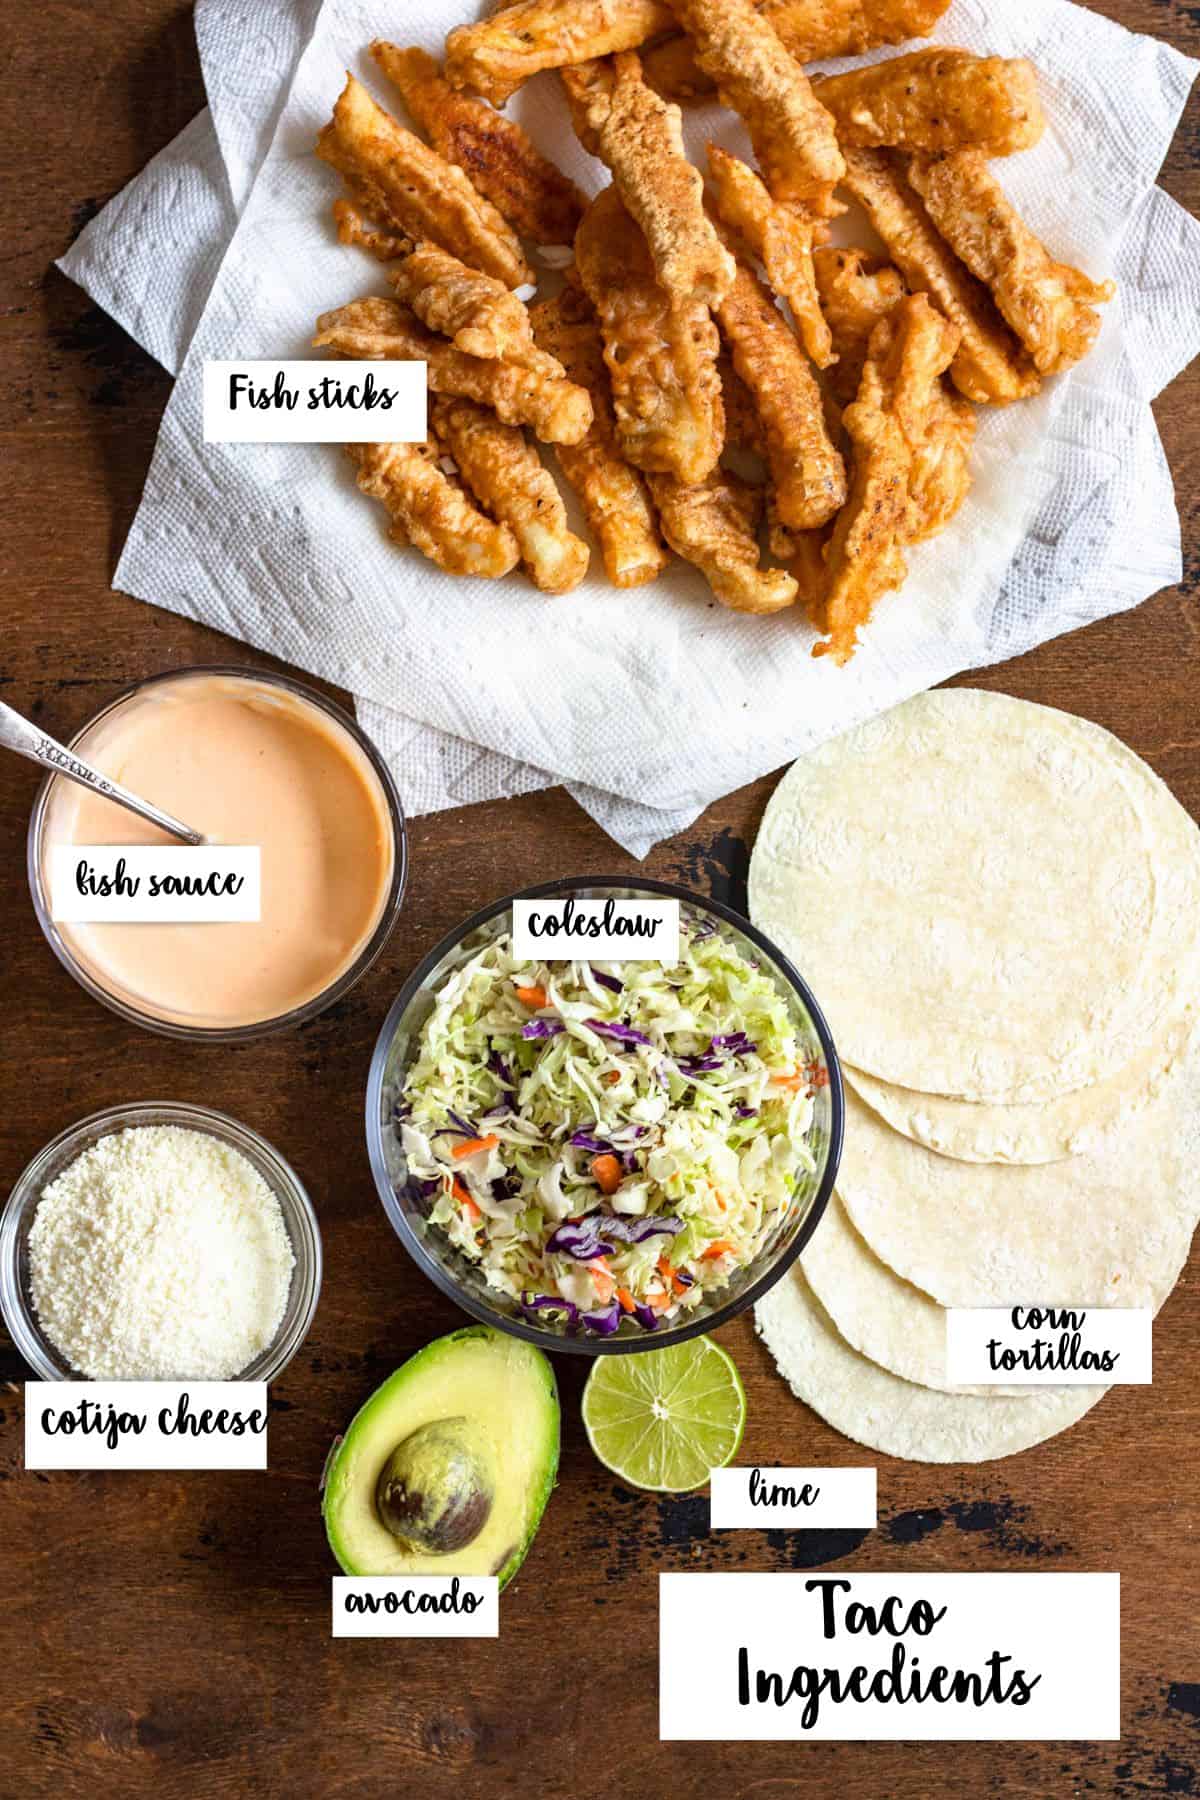 Ingredients to build tacos de pescado with. 